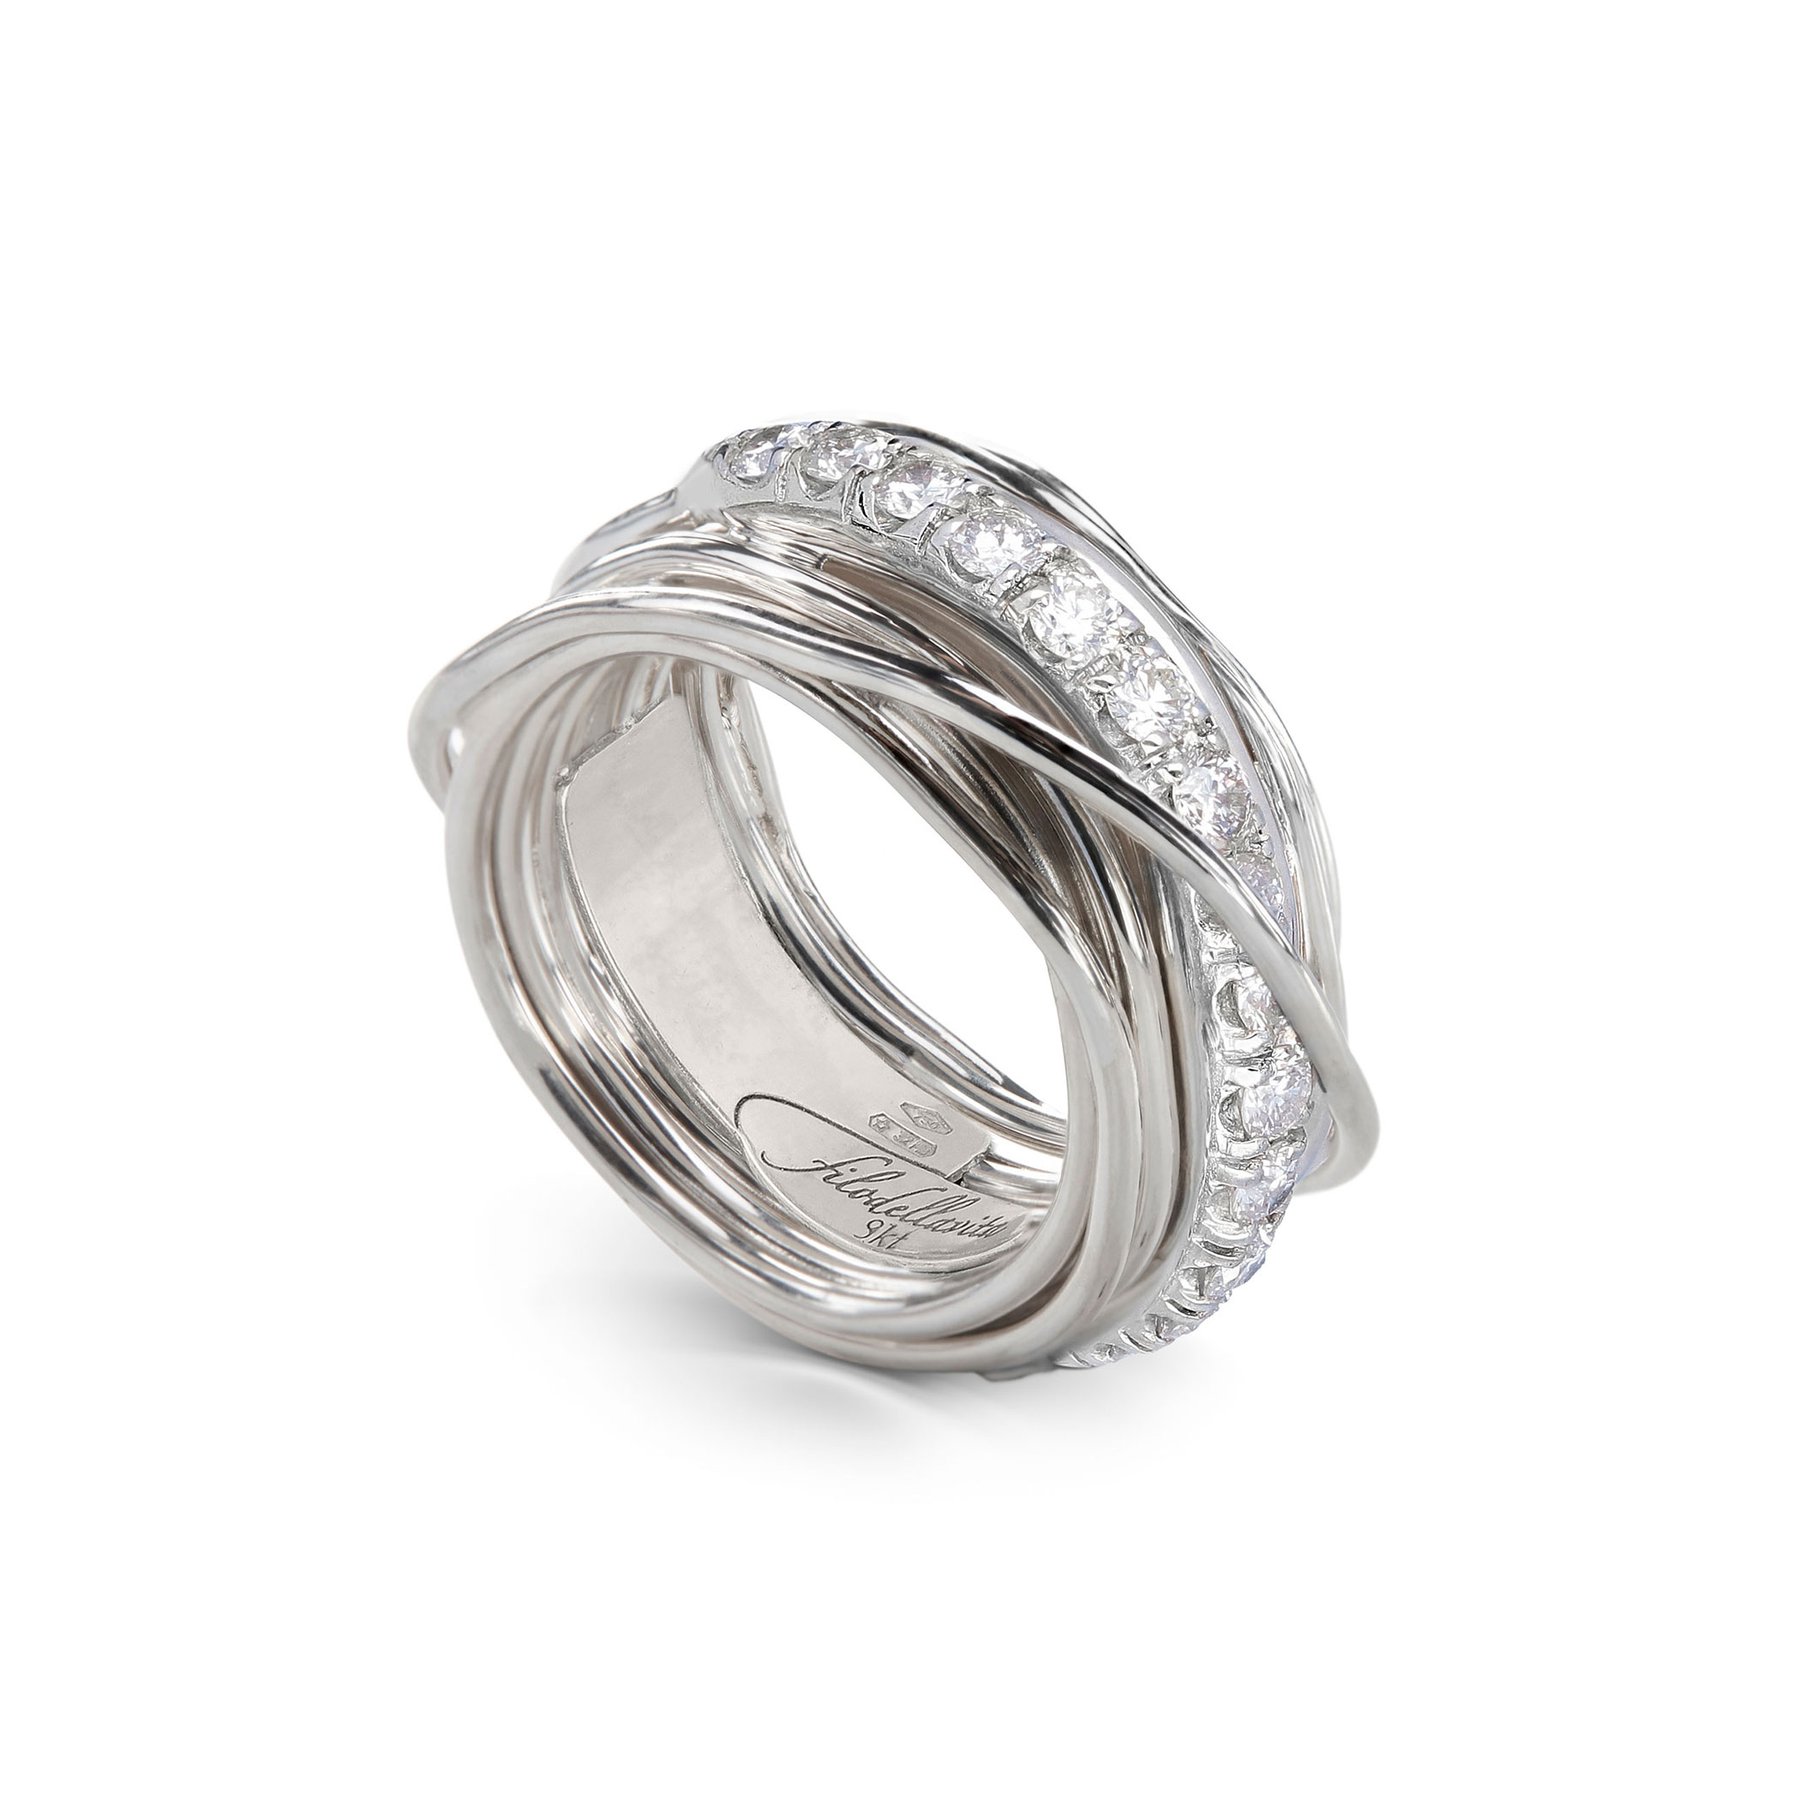 Precious 13-Wire Screwdriver Ring in 925 Silver and White Diamonds